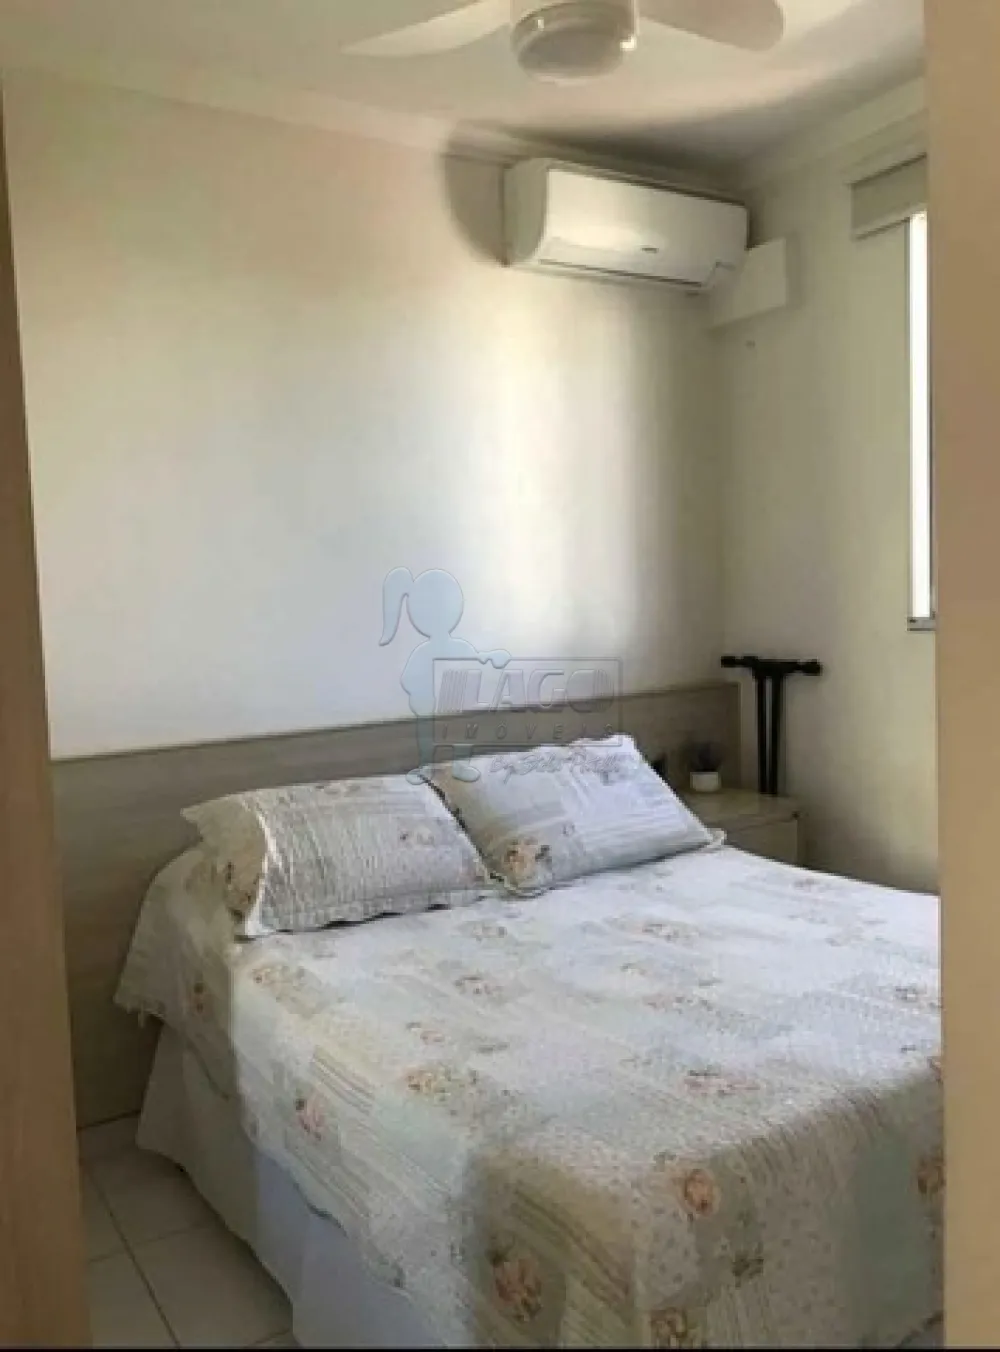 Comprar Apartamentos / Padrão em Ribeirão Preto R$ 200.000,00 - Foto 7